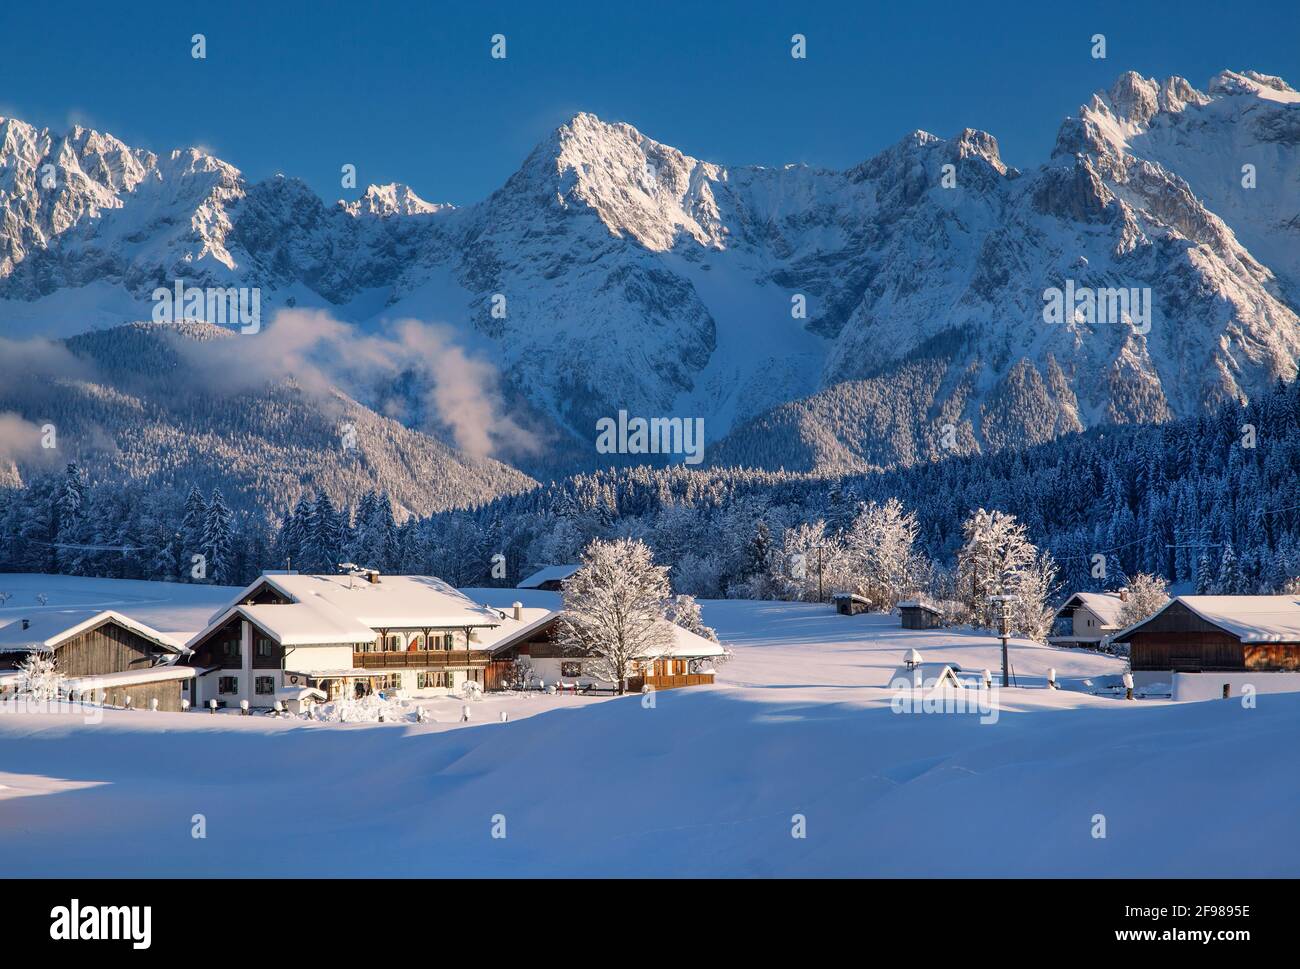 Winter landscape with the hamlet of Gerold against the Karwendel Mountains, Krün, Werdenfelser Land, Upper Bavaria, Bavaria, Germany Stock Photo